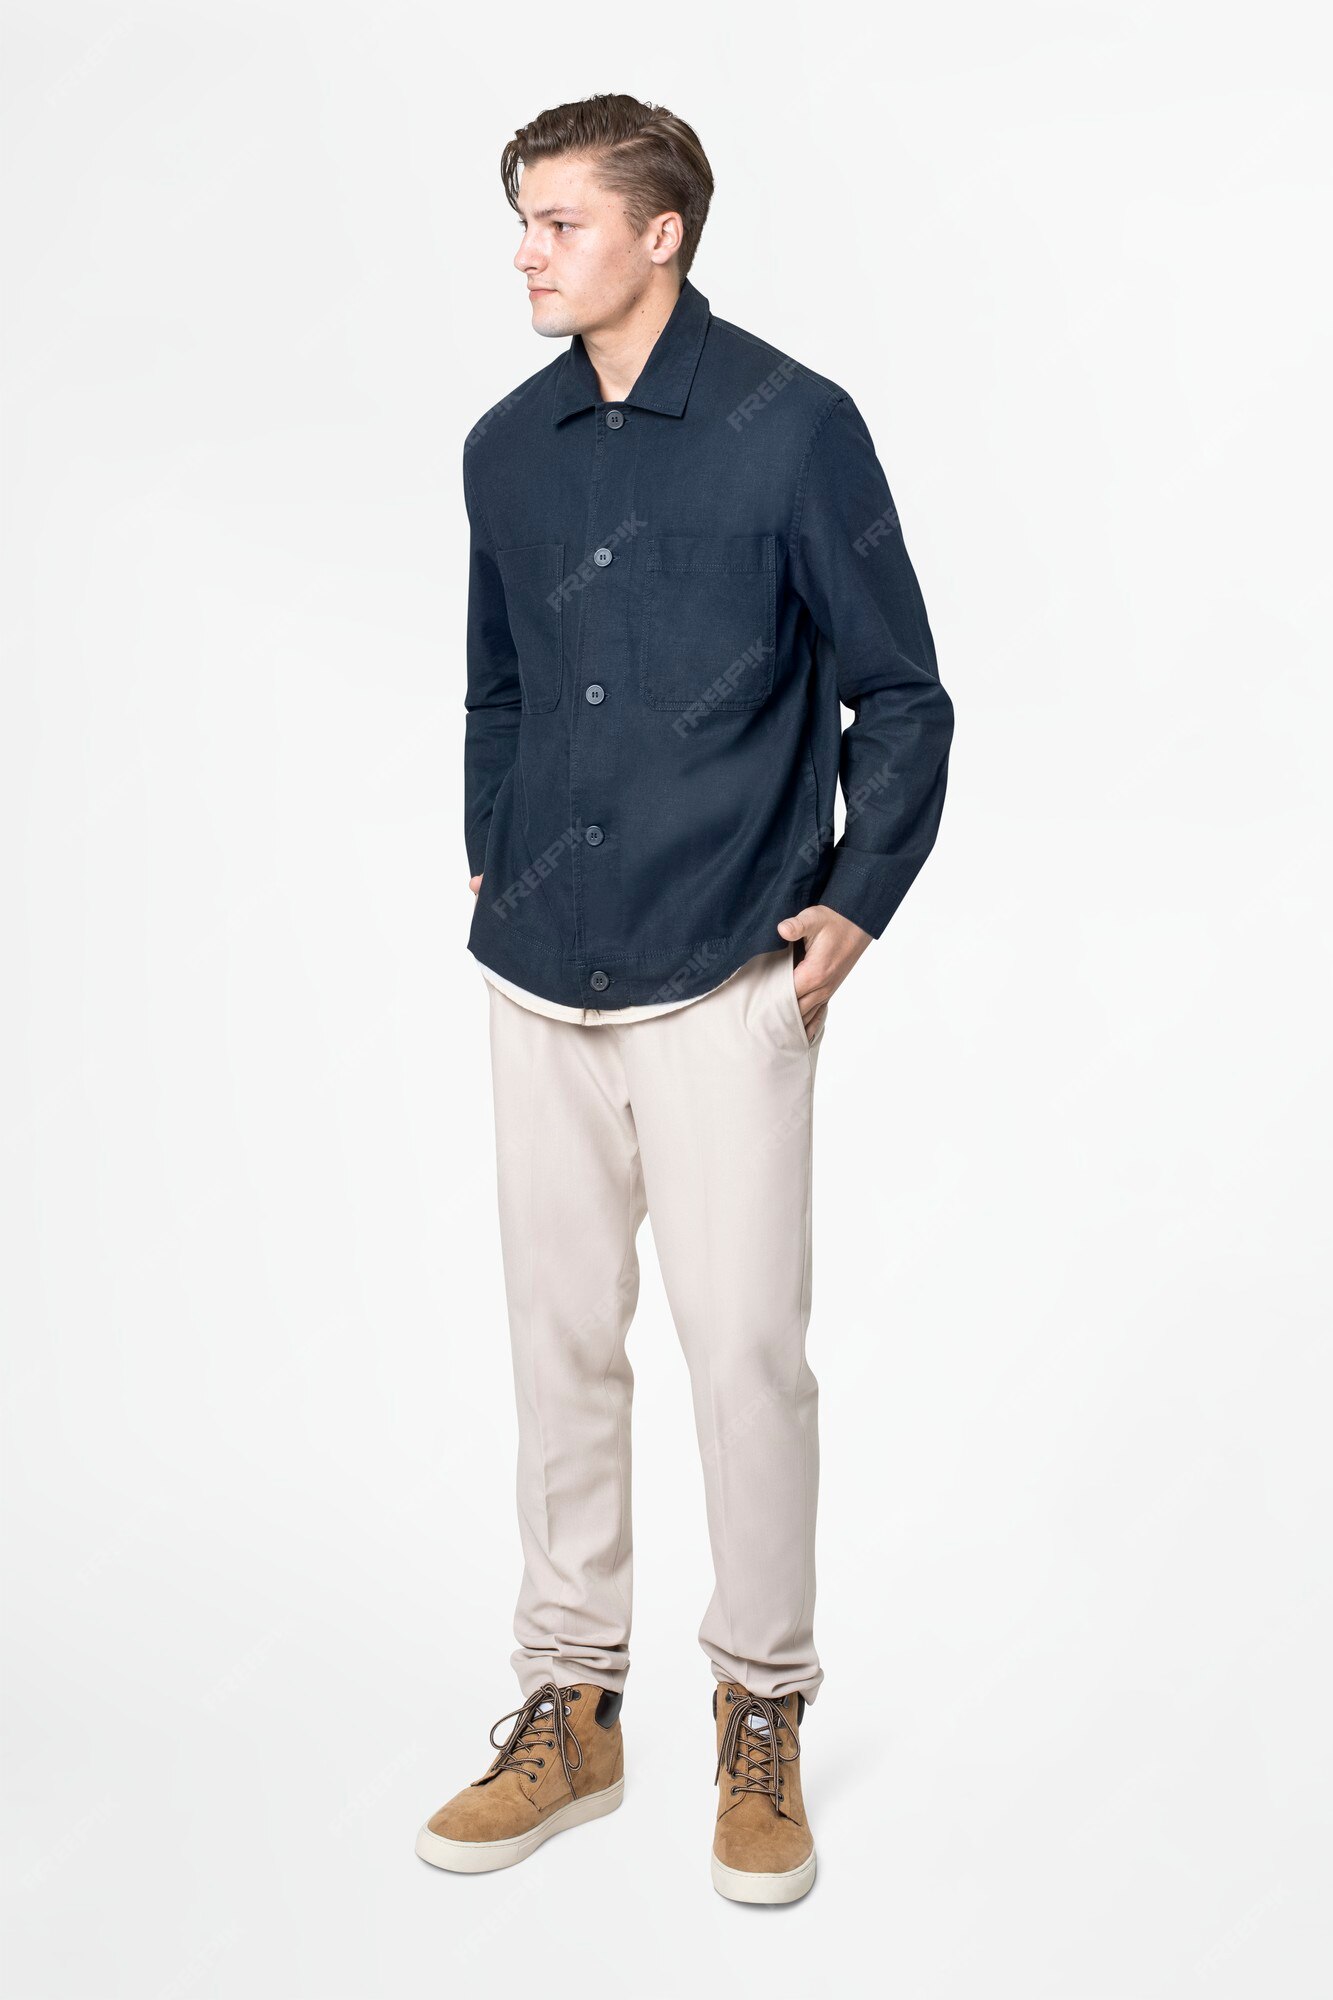 mezclador Norteamérica superficial Hombre en camisa y pantalón azul marino ropa casual de cuerpo completo de  moda | Foto Gratis